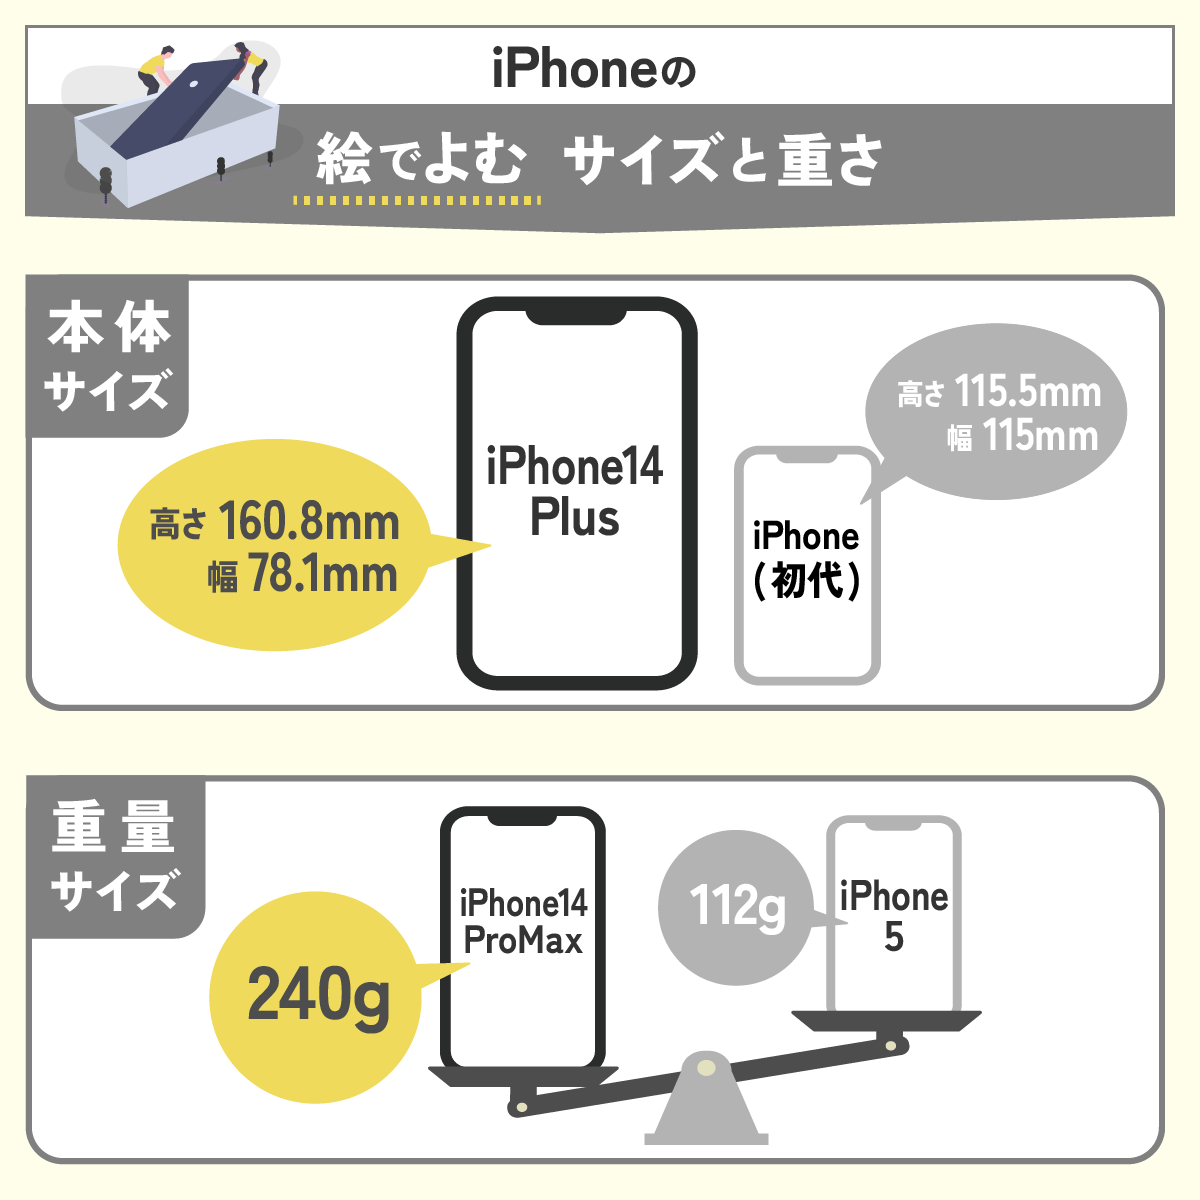 iPhoneのサイズ・重さ一覧表